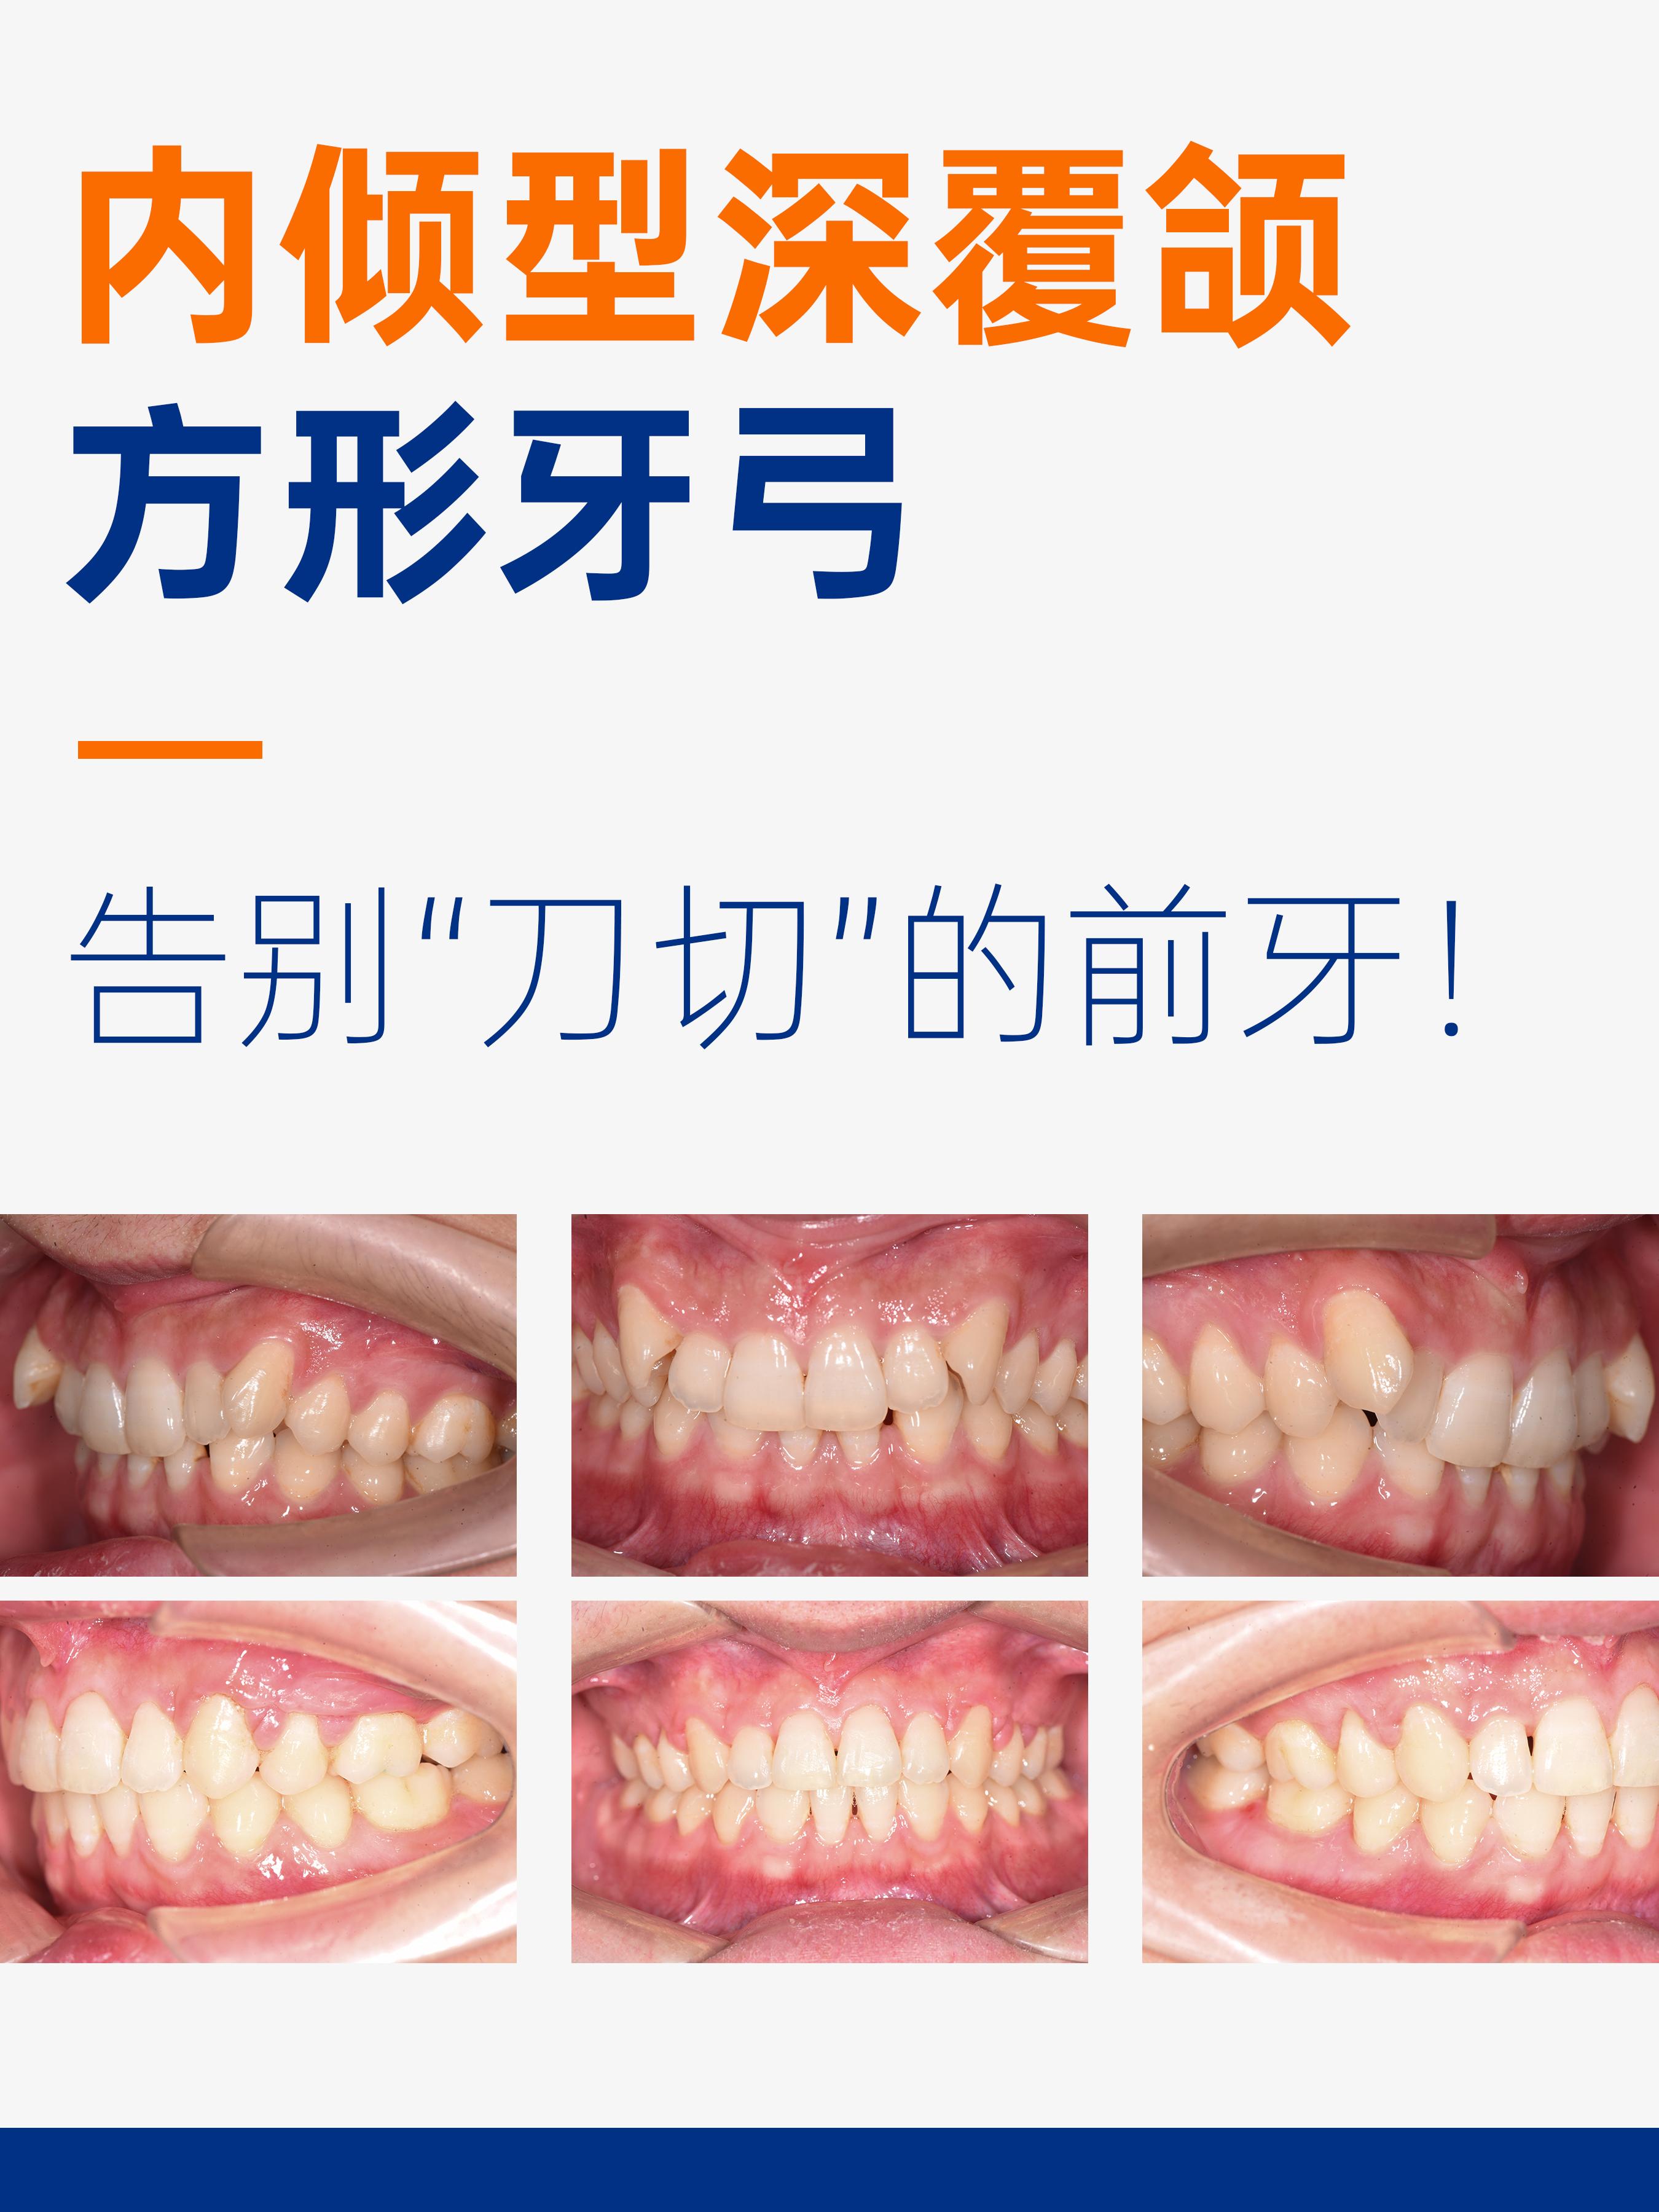 请问大家上海哪家医院矫正牙齿比较好？ - 知乎